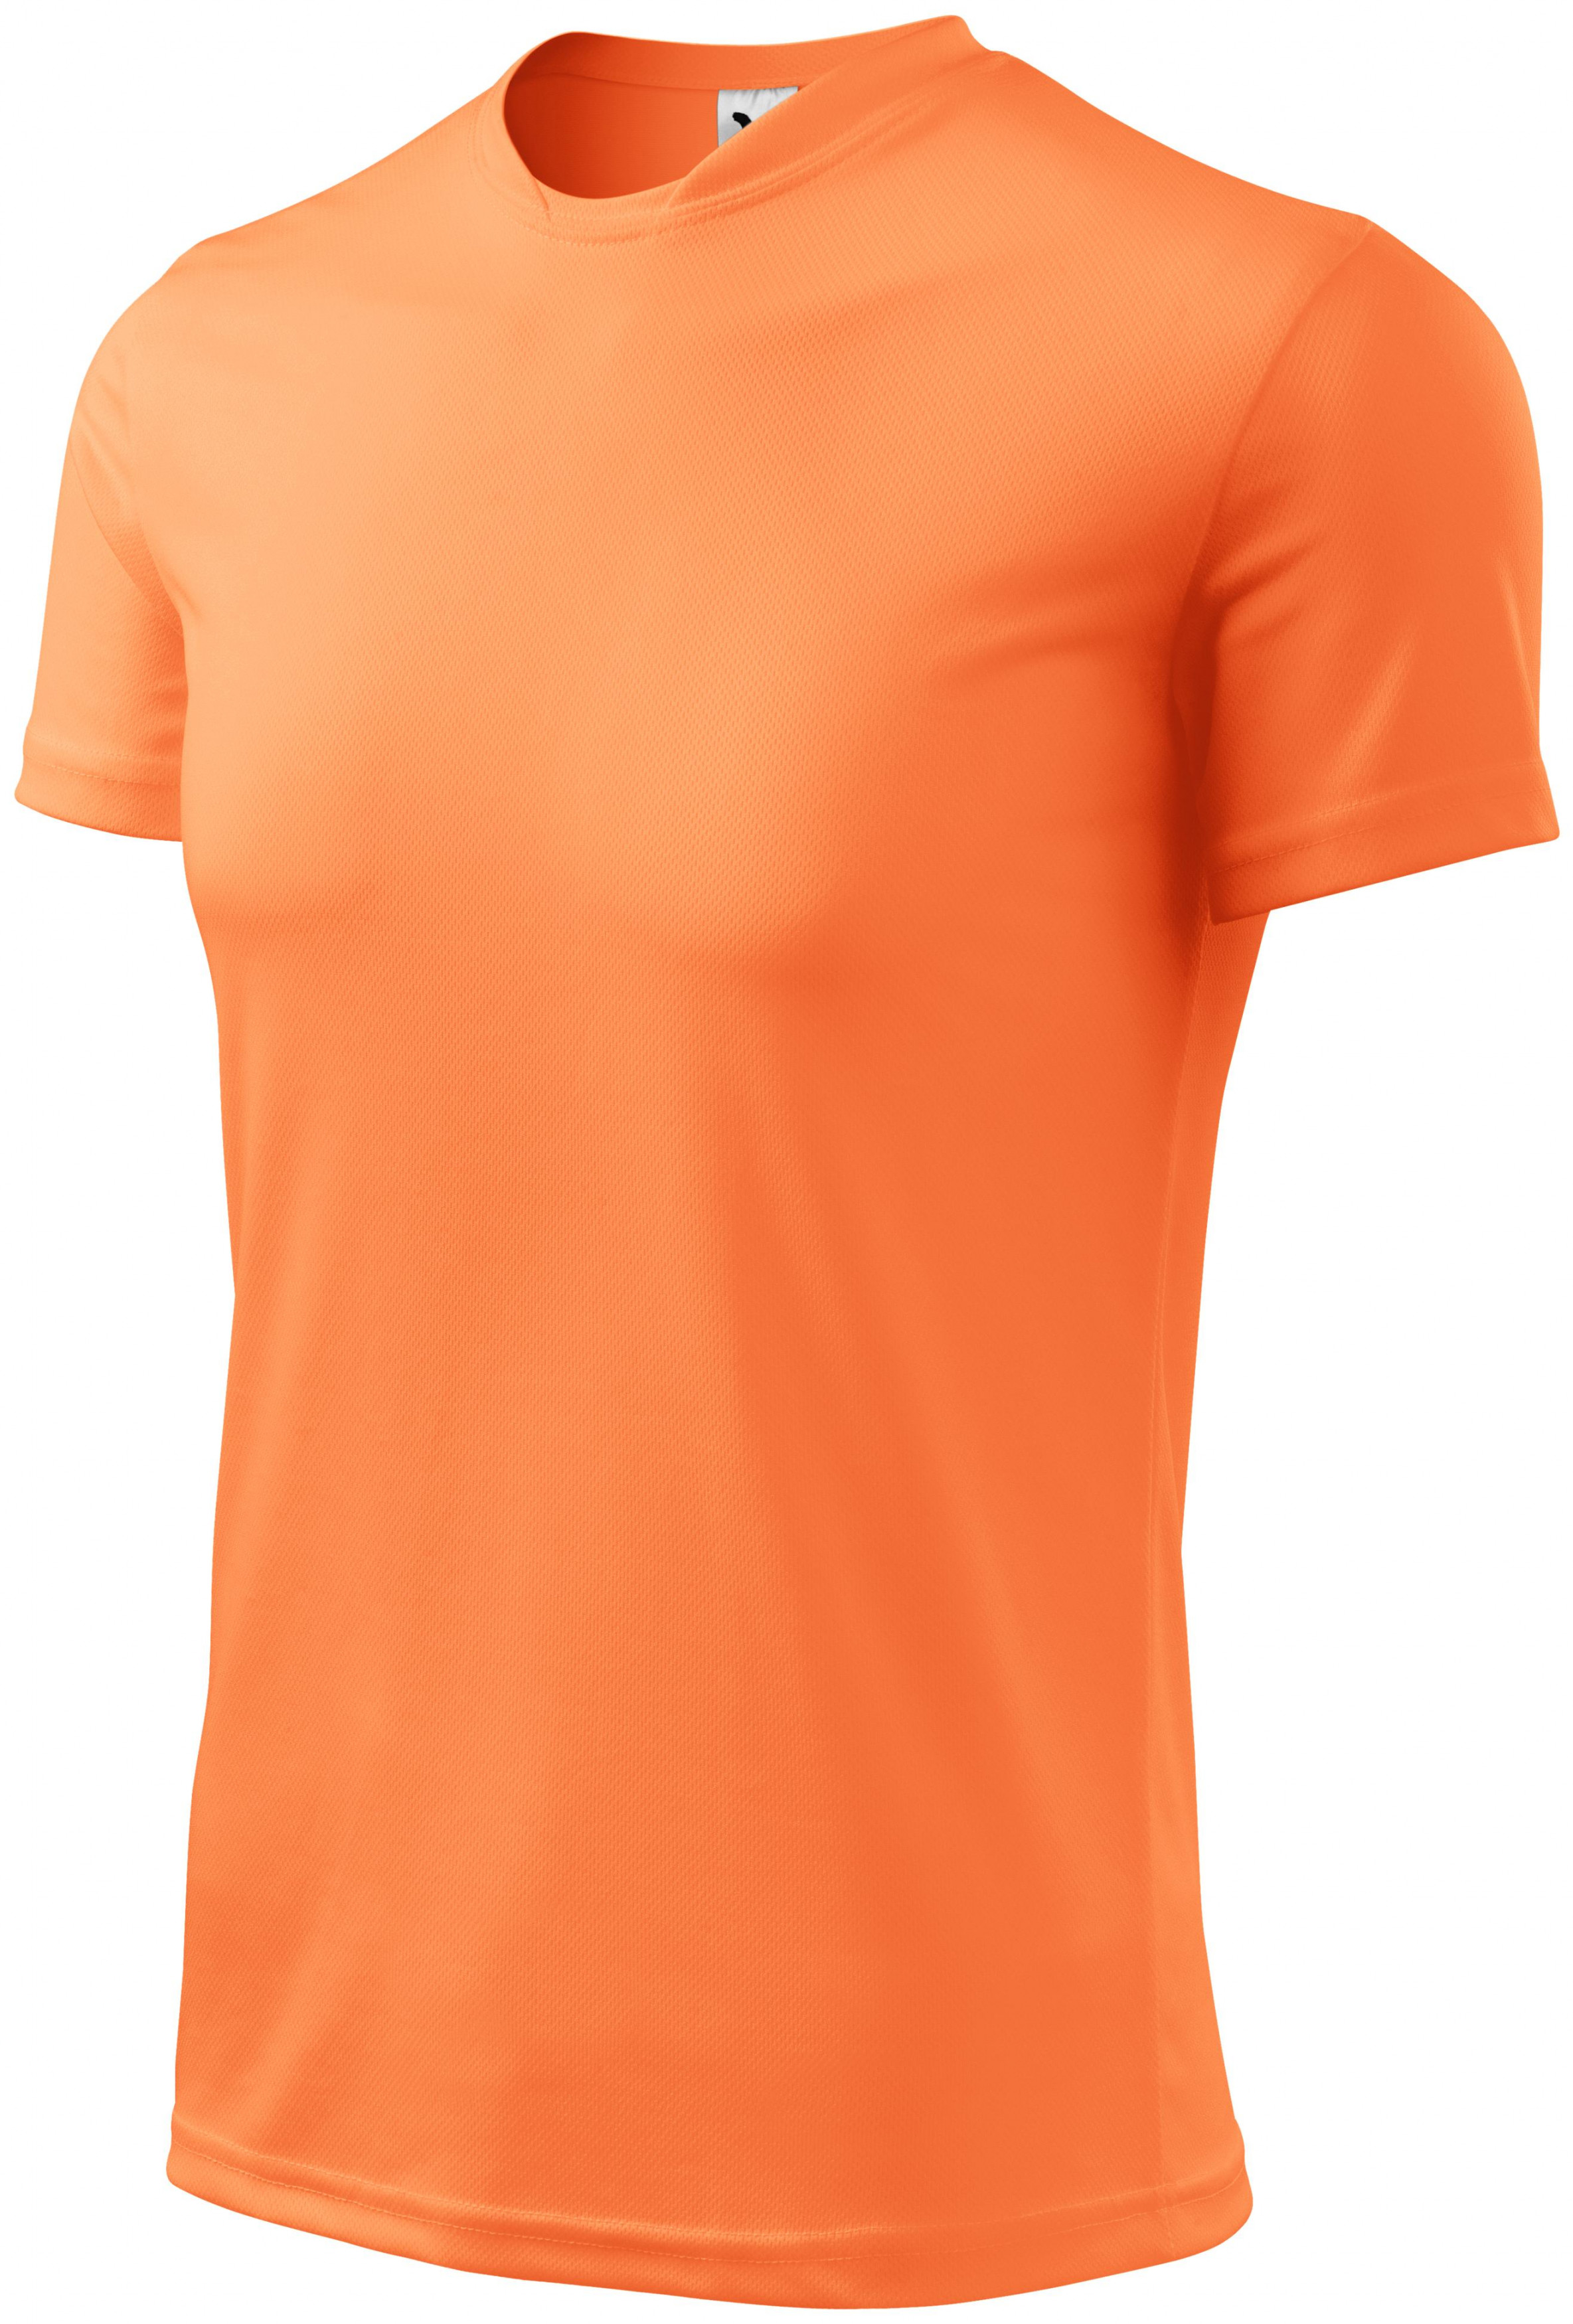 Športové tričko detské, neónová mandarinková, 134cm / 8rokov